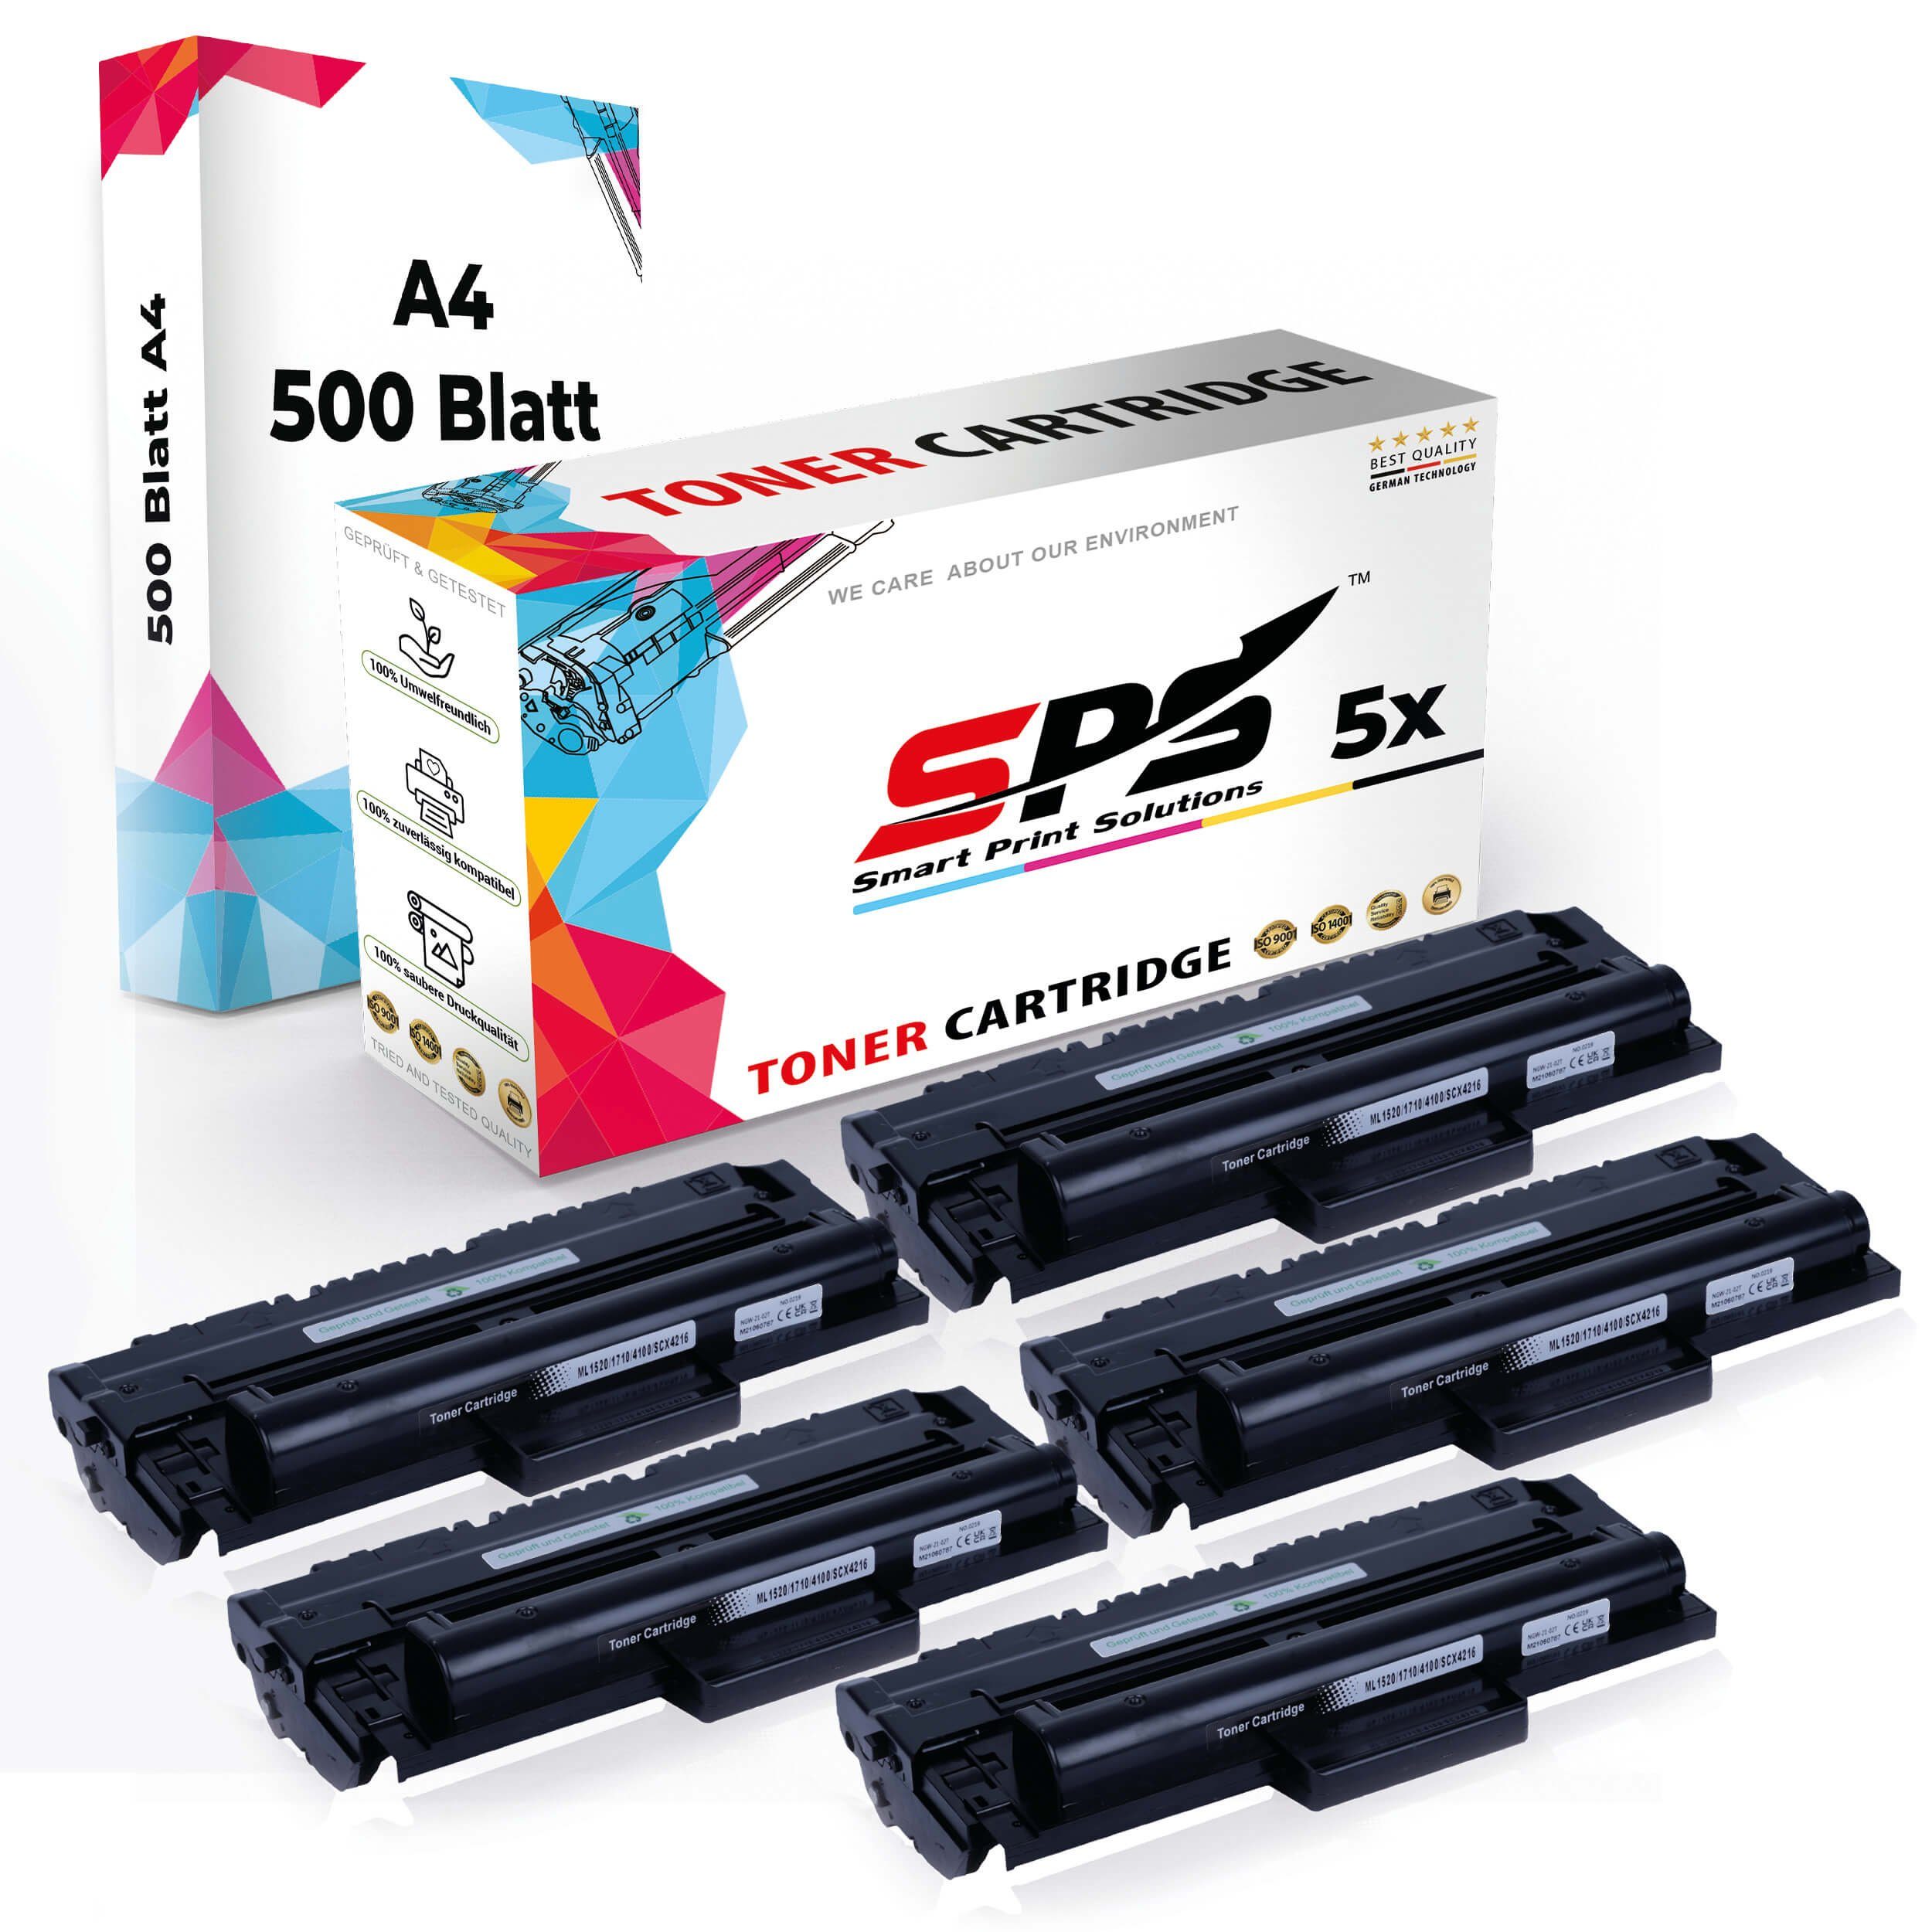 5x Toner,1x Druckerpapier 5x Pack, Multipack A4 (5er SPS A4 Tonerkartusche Set Kompatibel, + Druckerpapier)